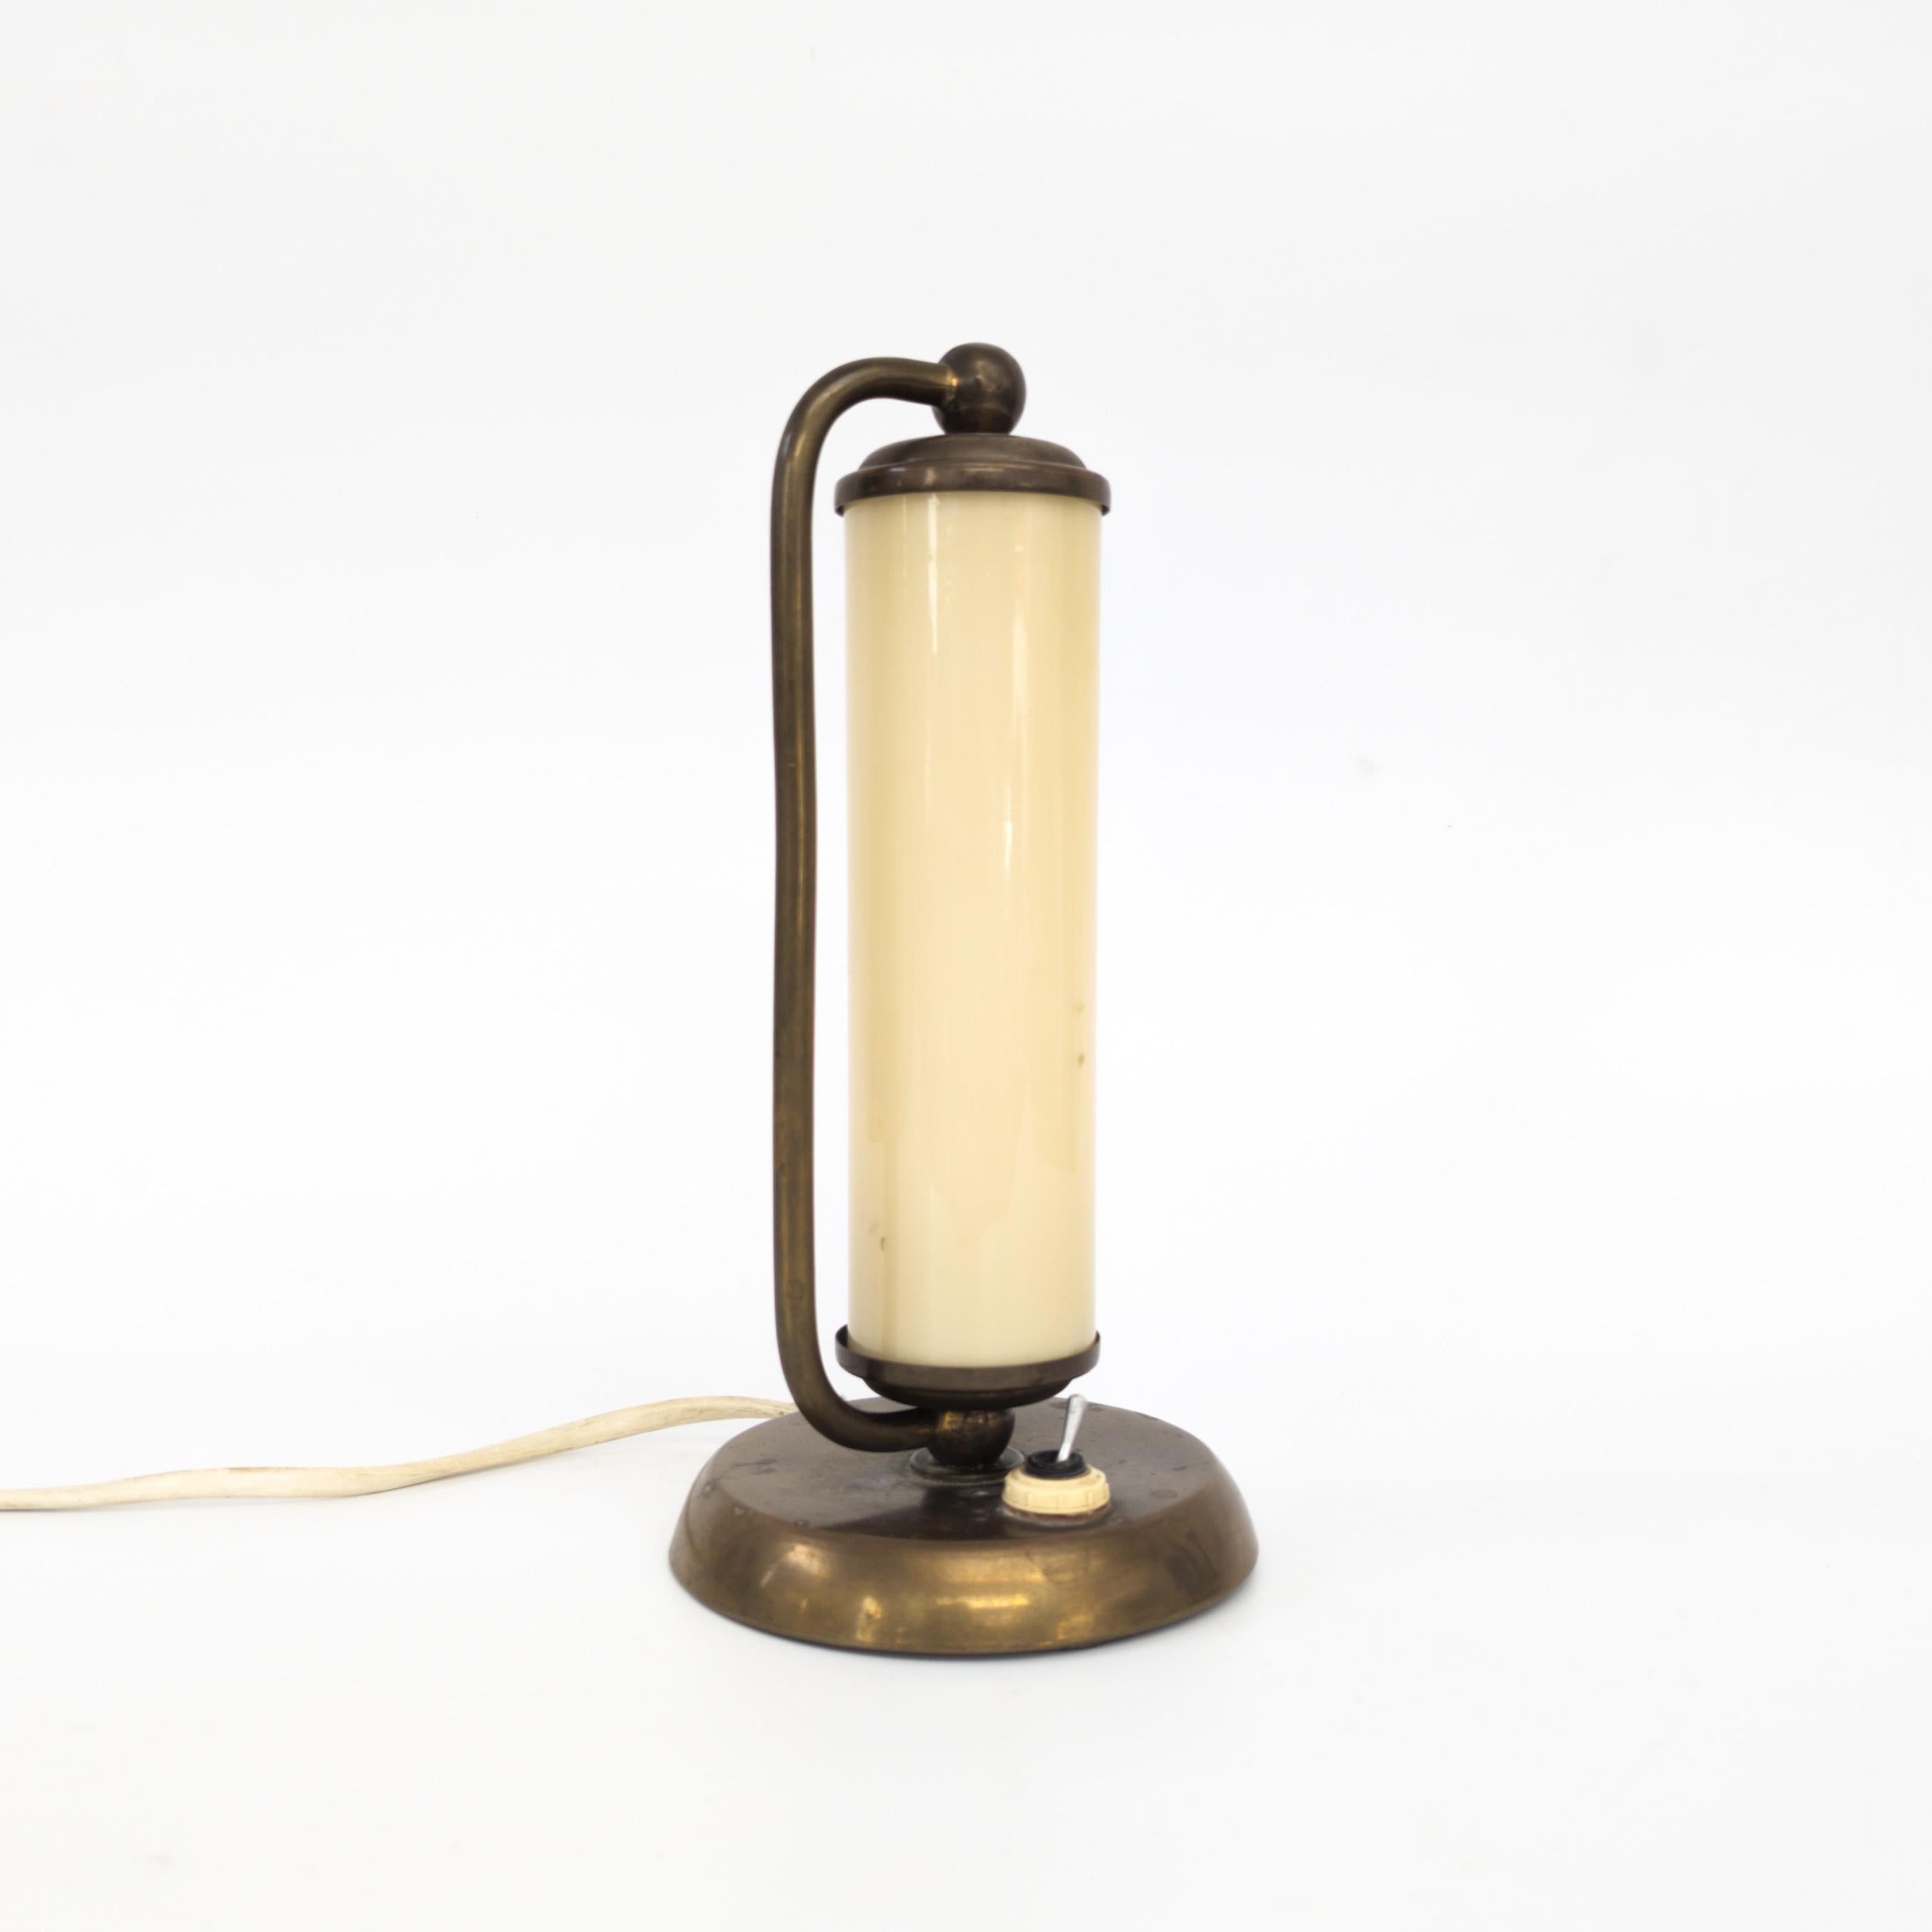 Eine Tischlampe, hergestellt von Napako, ehemalige Tschechoslowakei in den 1930er Jahren. Schöne Art Deco Nachttischlampe mit Messingfuß und zylindrischem Opalglasschirm. In gutem Originalzustand, voll funktionsfähig.